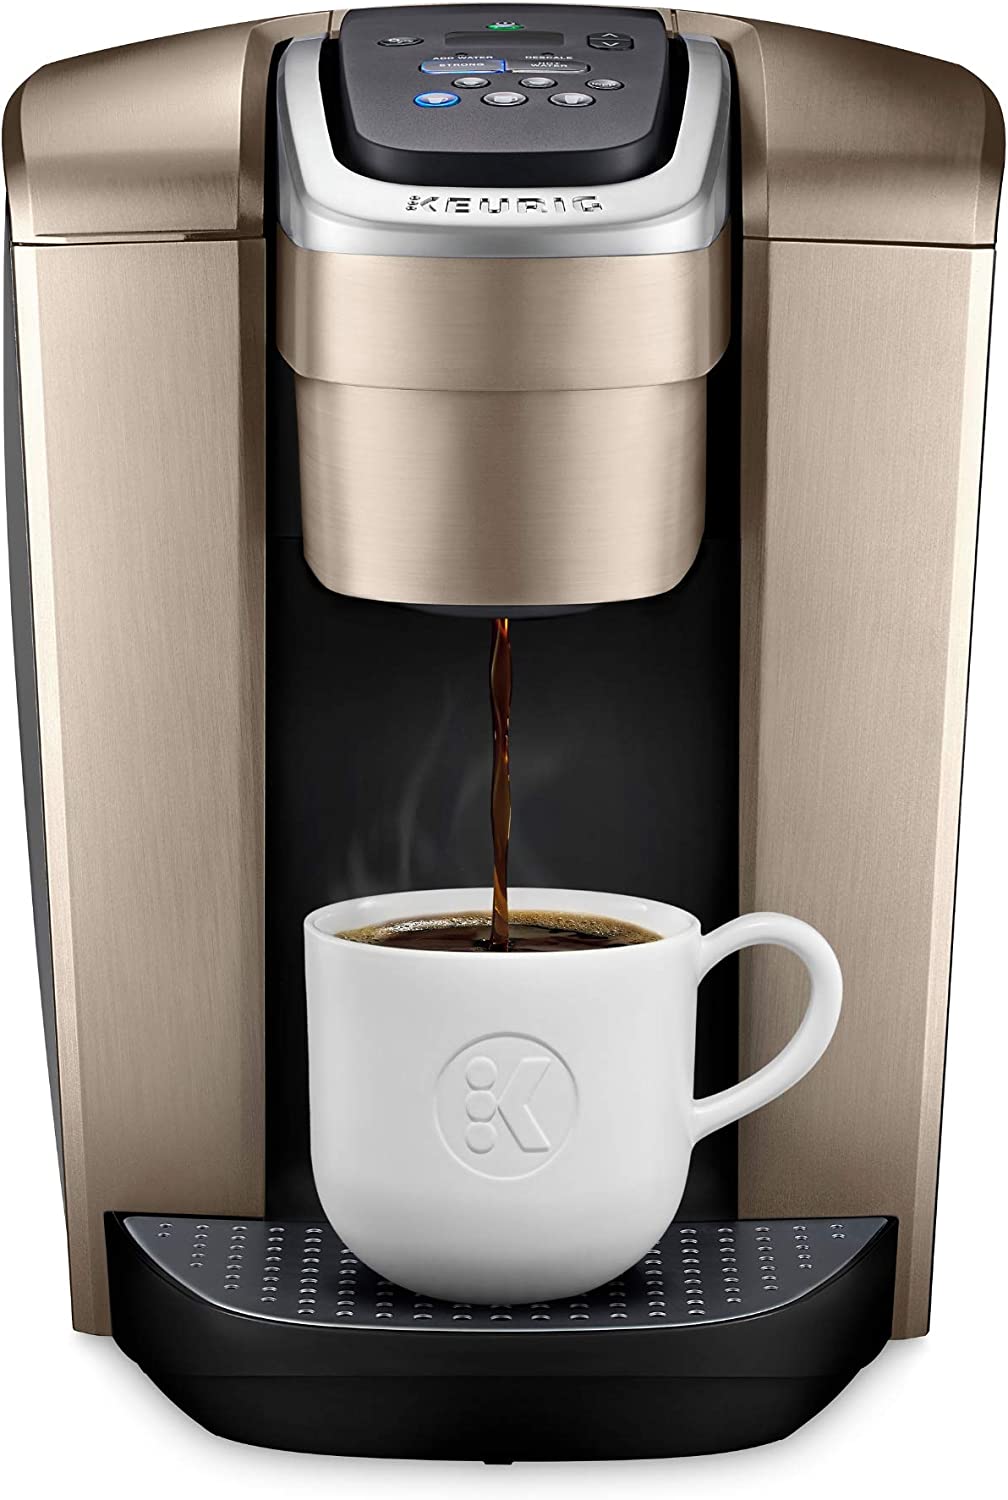 https://1401700980.rsc.cdn77.org/data/images/full/110097/amazon-black-friday-deals-2022-keurig-k-elite-coffee-maker.jpg